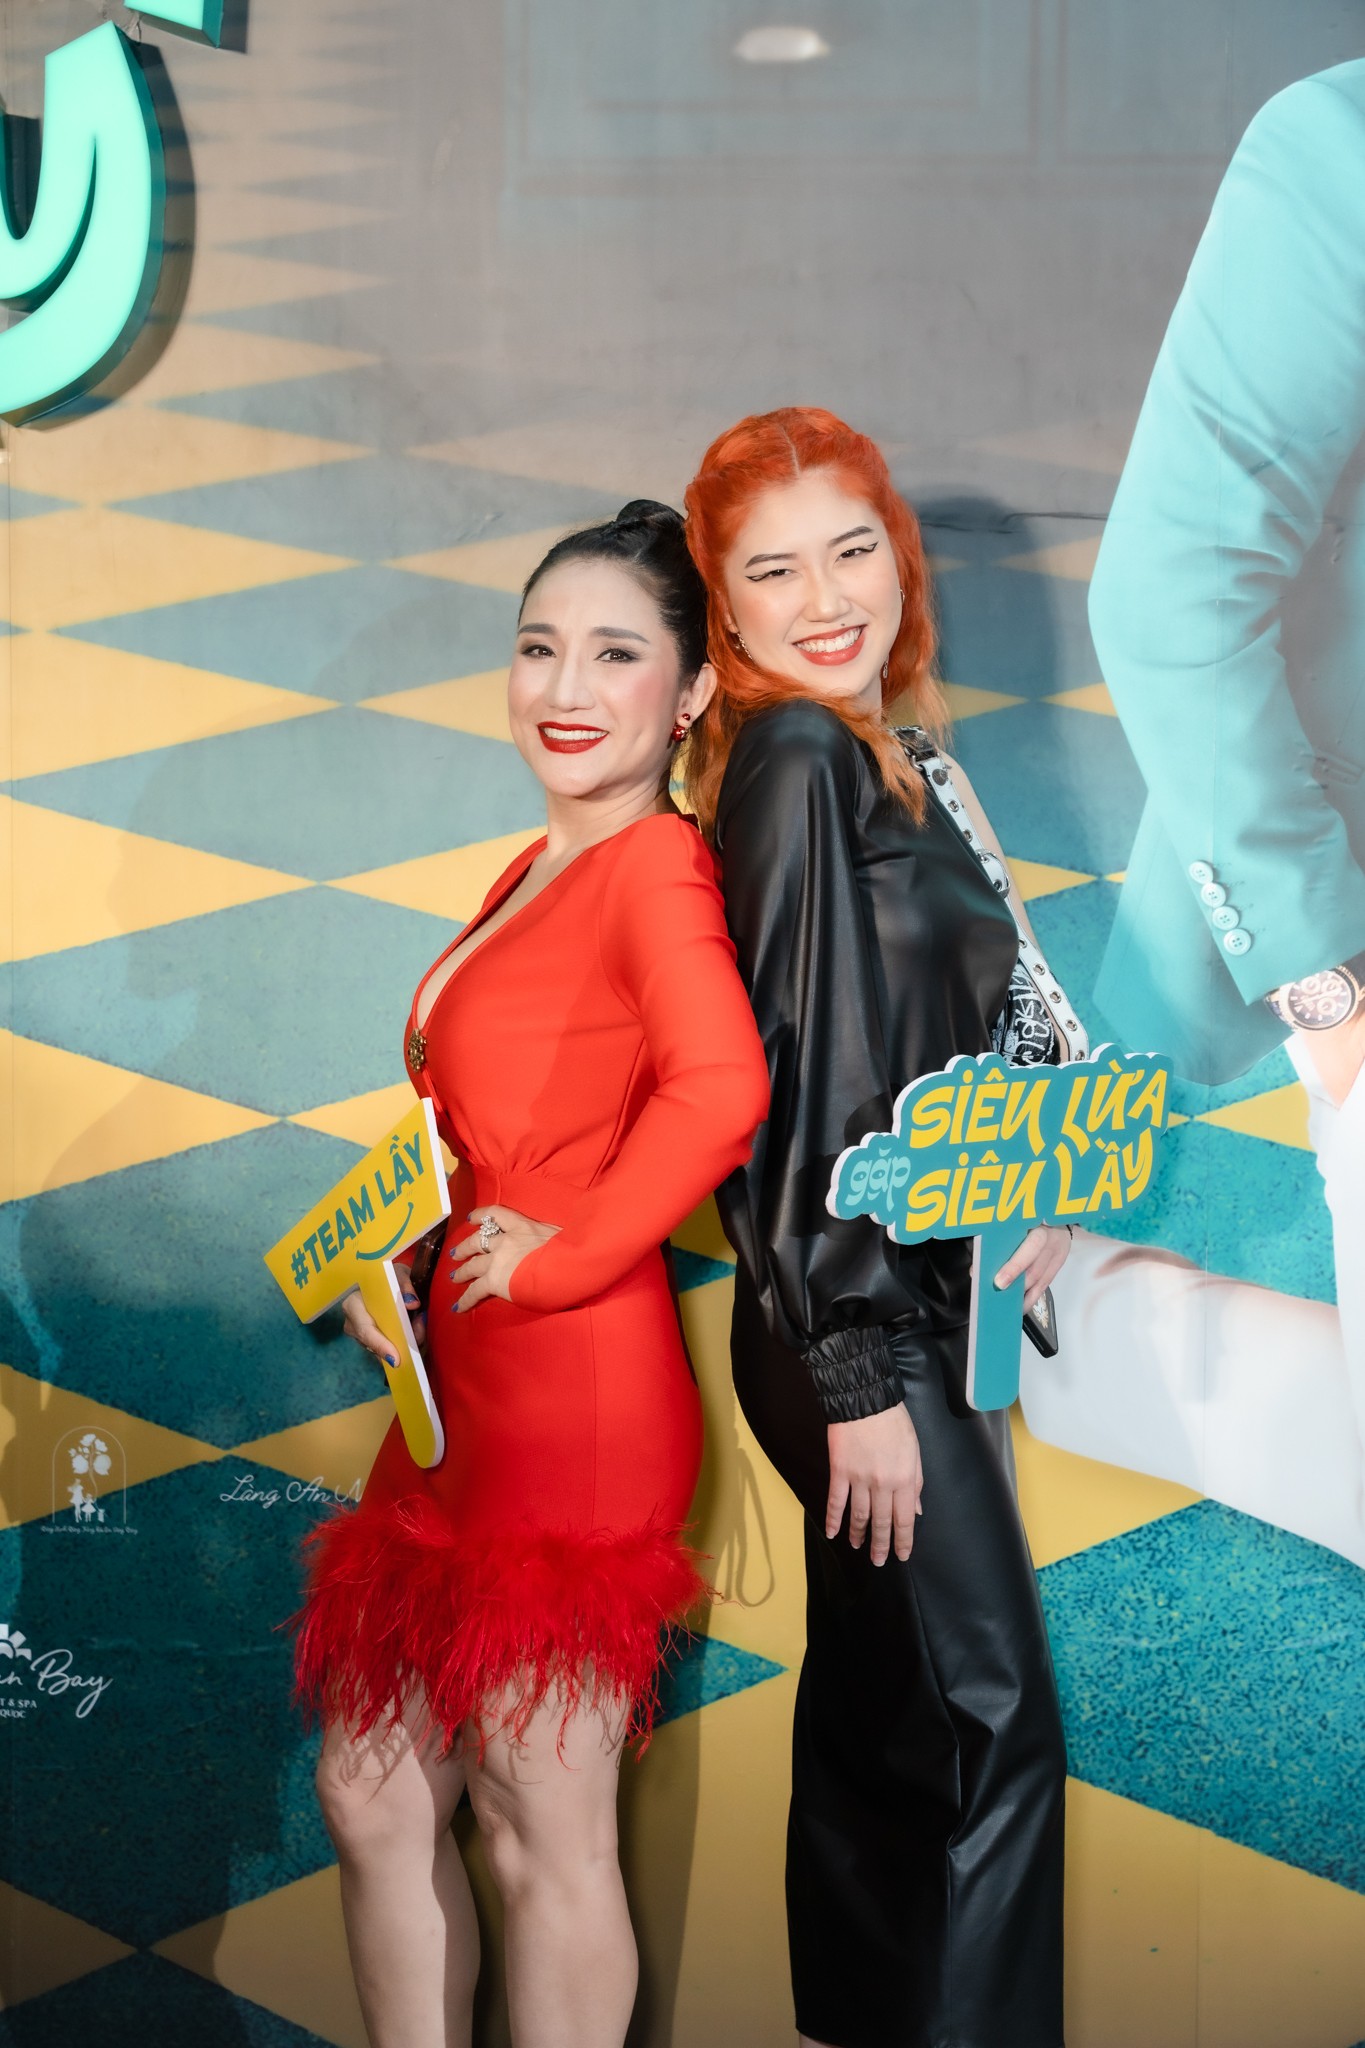 Dàn sao đổ bộ thảm đỏ ‘Siêu lừa gặp siêu lầy’: Thu Trang gợi cảm, Khánh Vân catwalk siêu cuốn